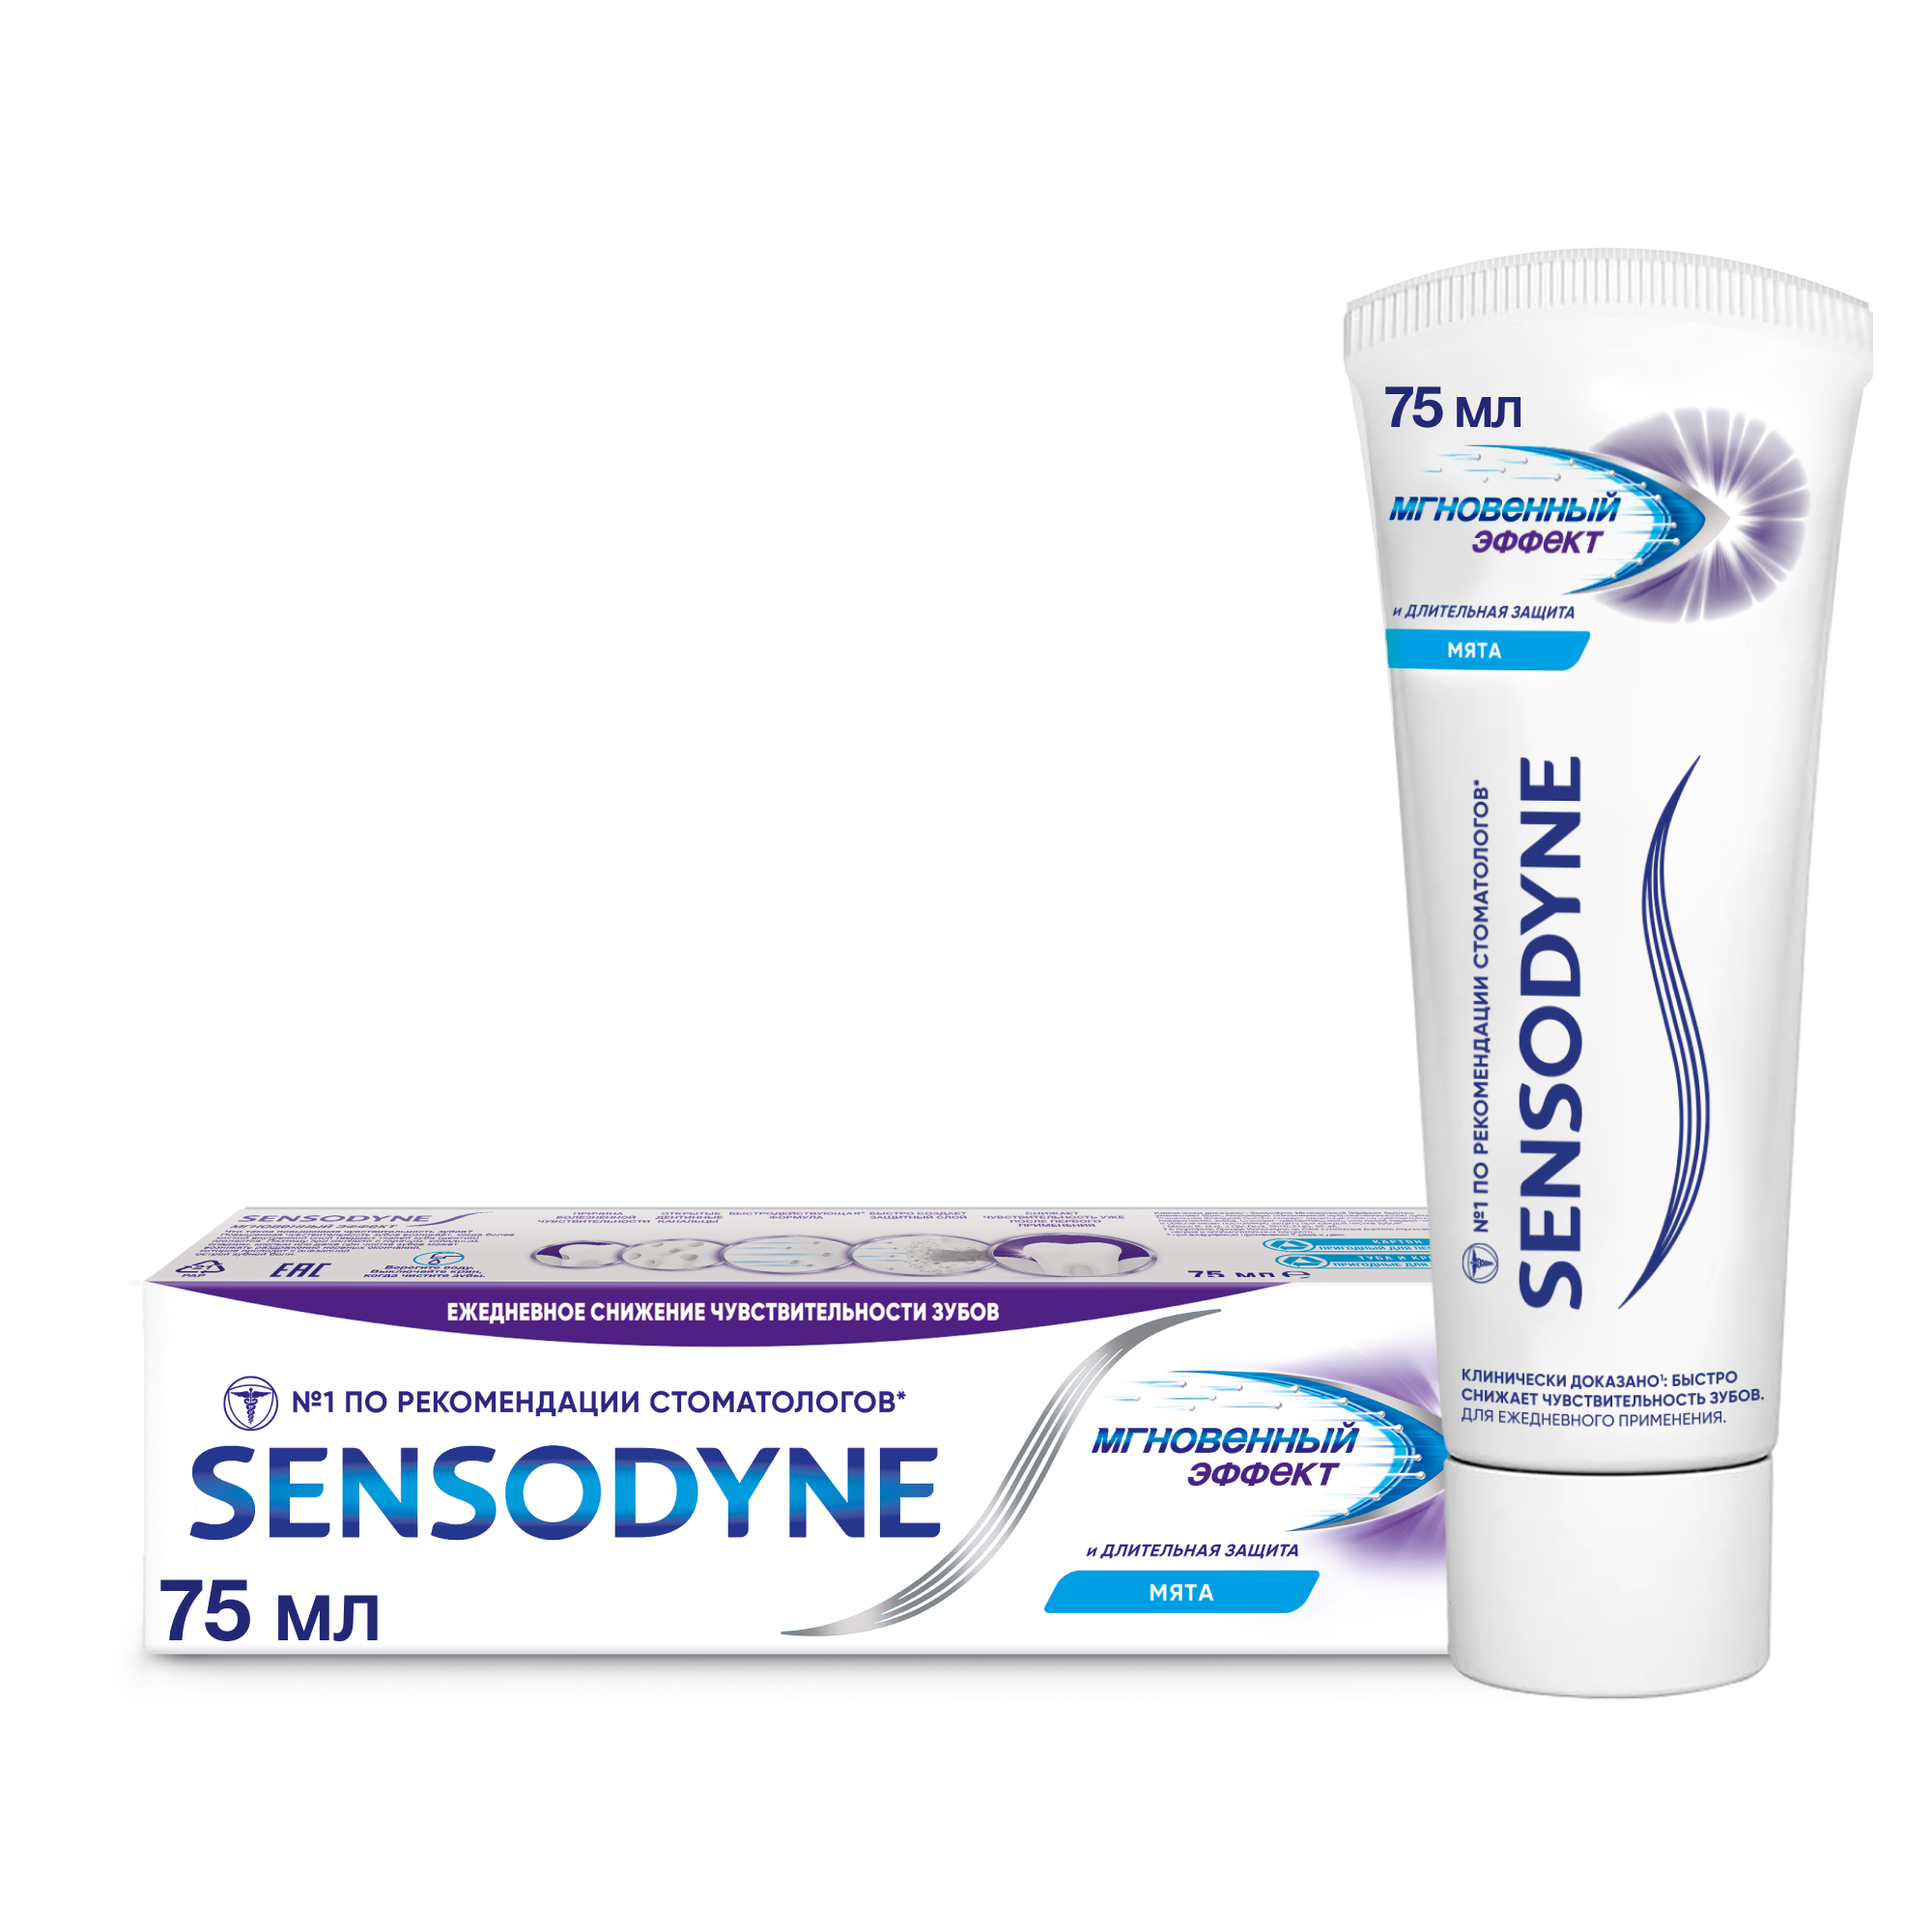 Зубная паста Sensodyne Мгновенный Эффект 75мл зубная паста sensodyne мгновенный эффект 75мл